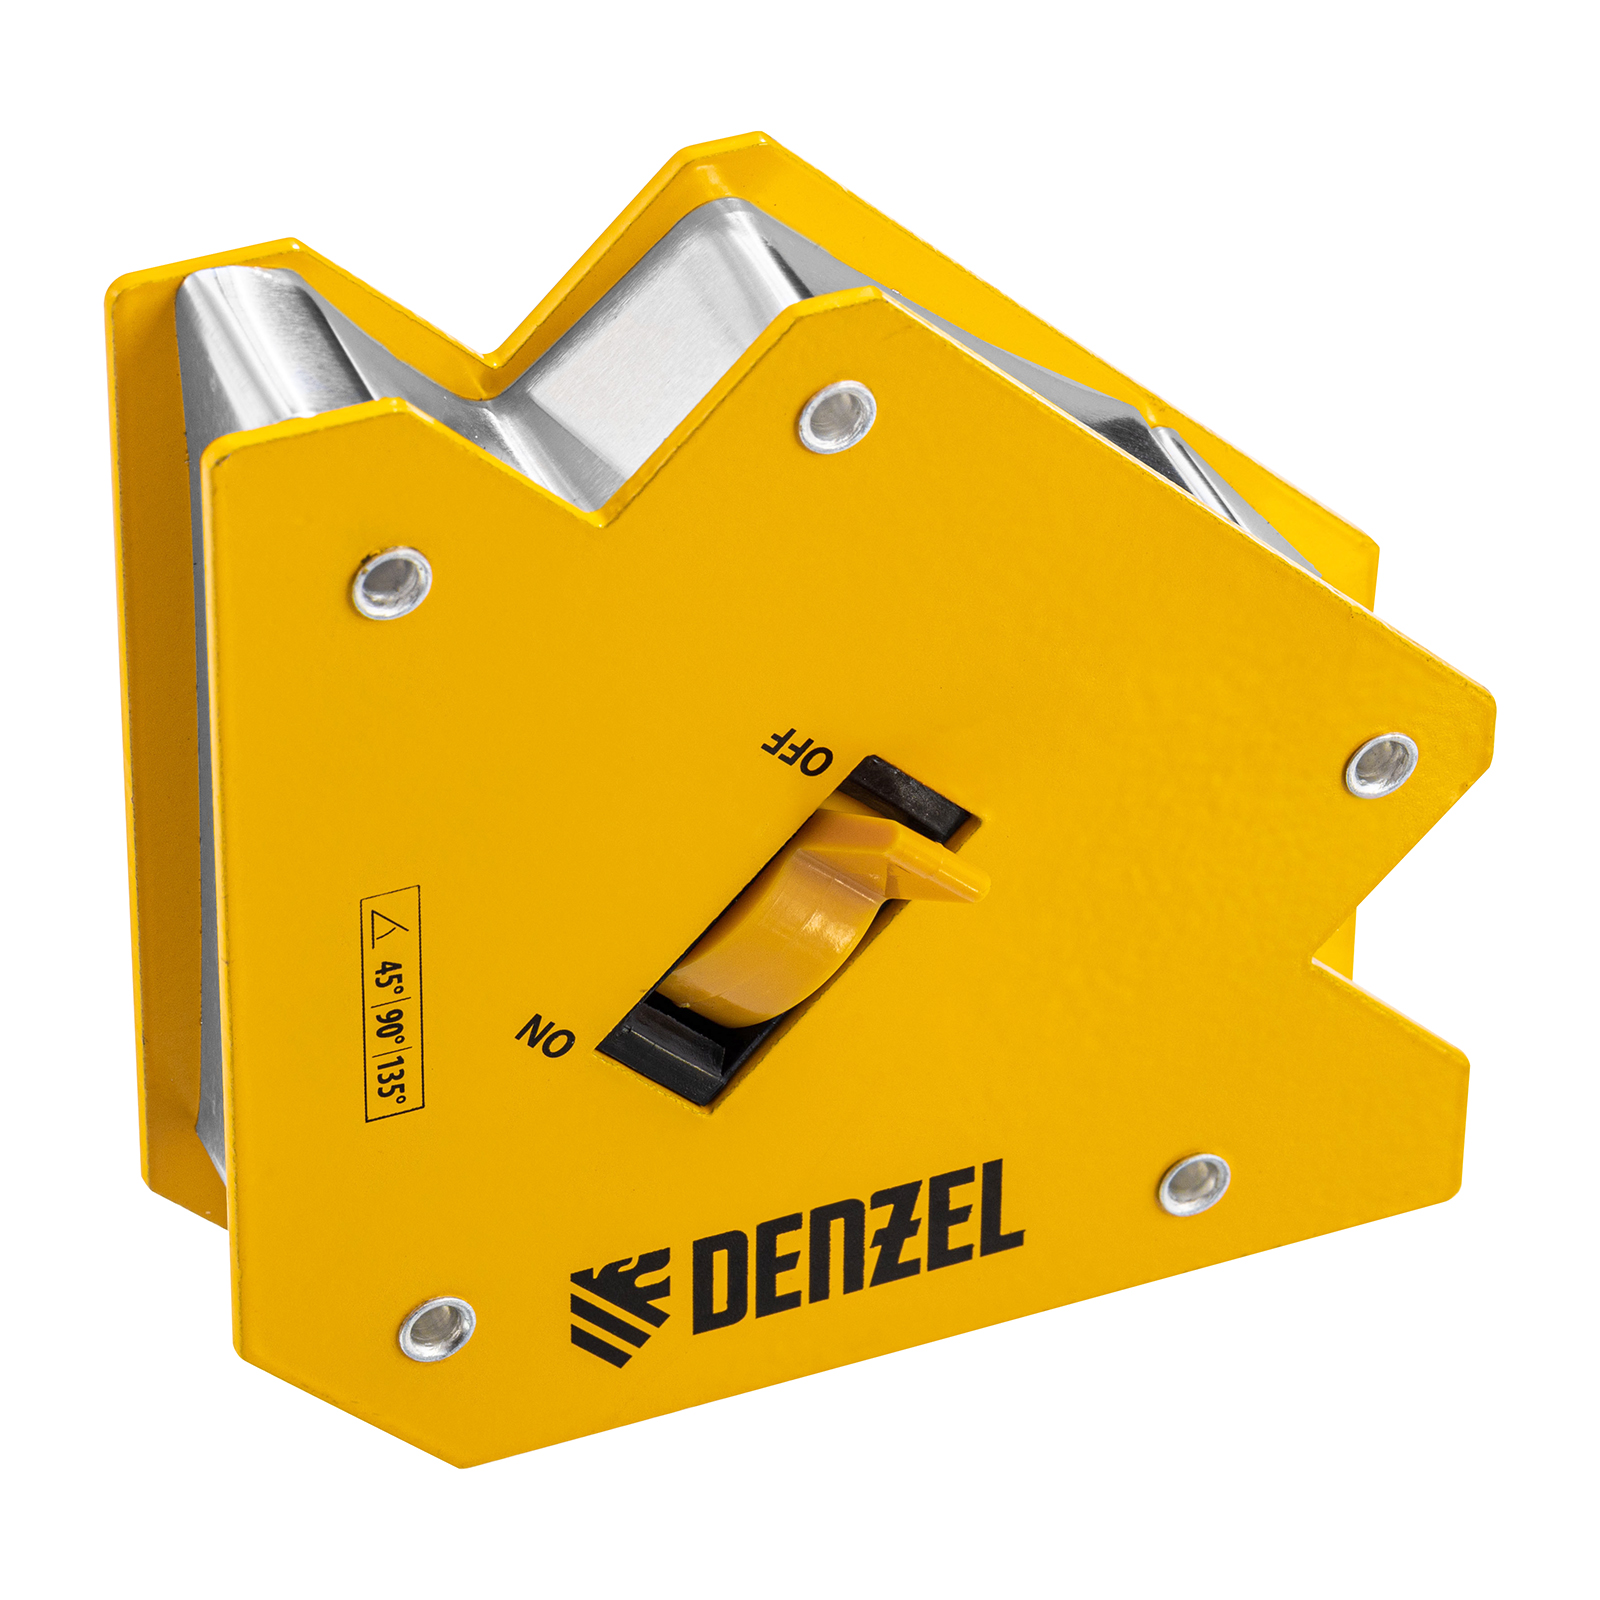 Фиксатор магнитный отключаемый для сварочных работ DENZEL усилие 30 LB, 45х90х135 гр 97563 магнитный фиксатор для сварочных работ ultima